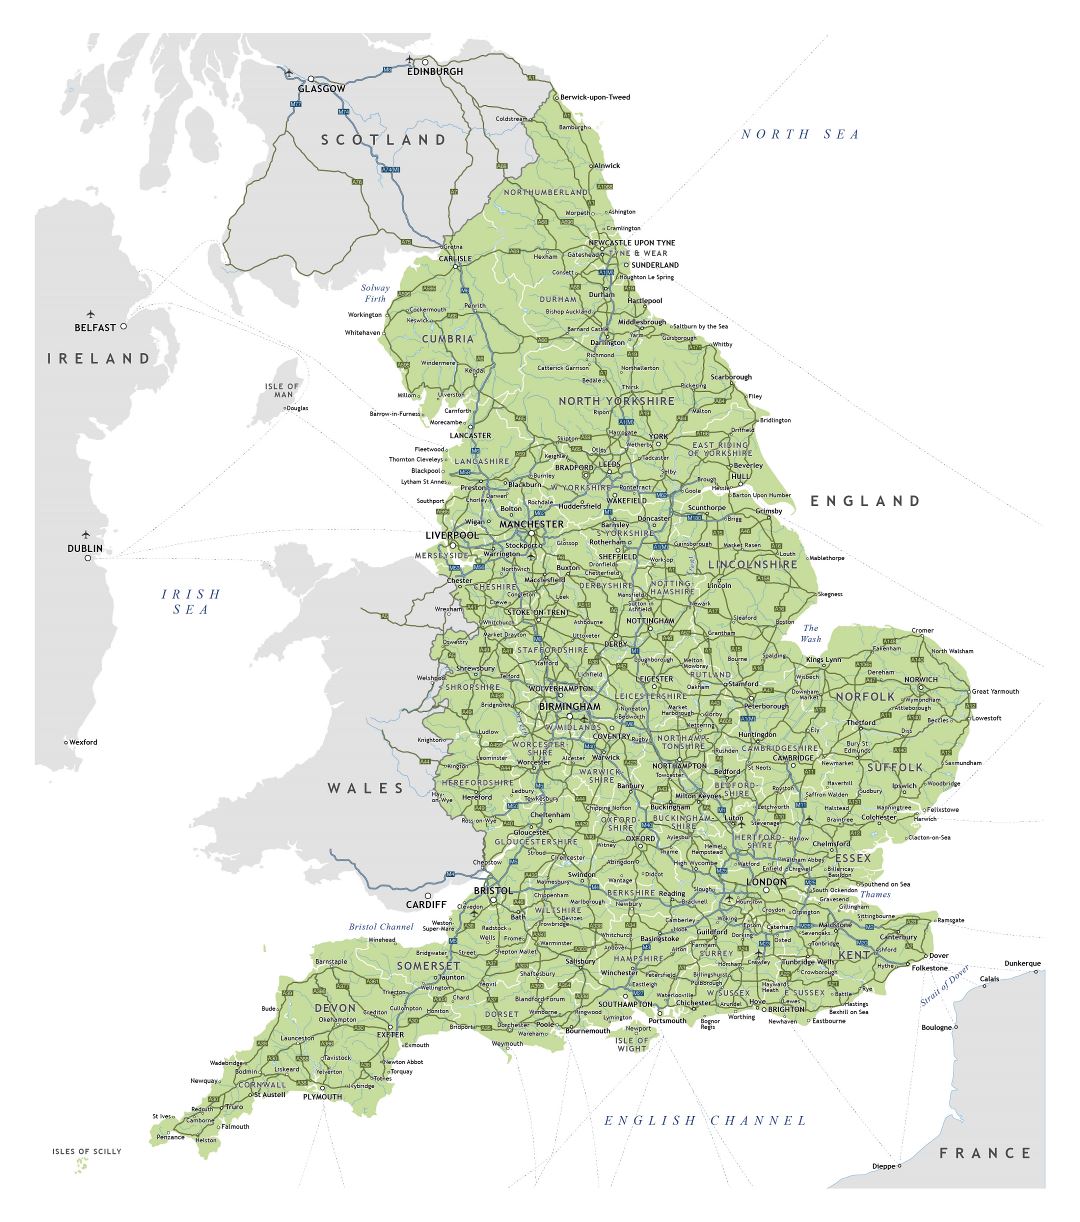 Grande detallado mapa de Inglaterra con carreteras, ciudades y aeropuertos